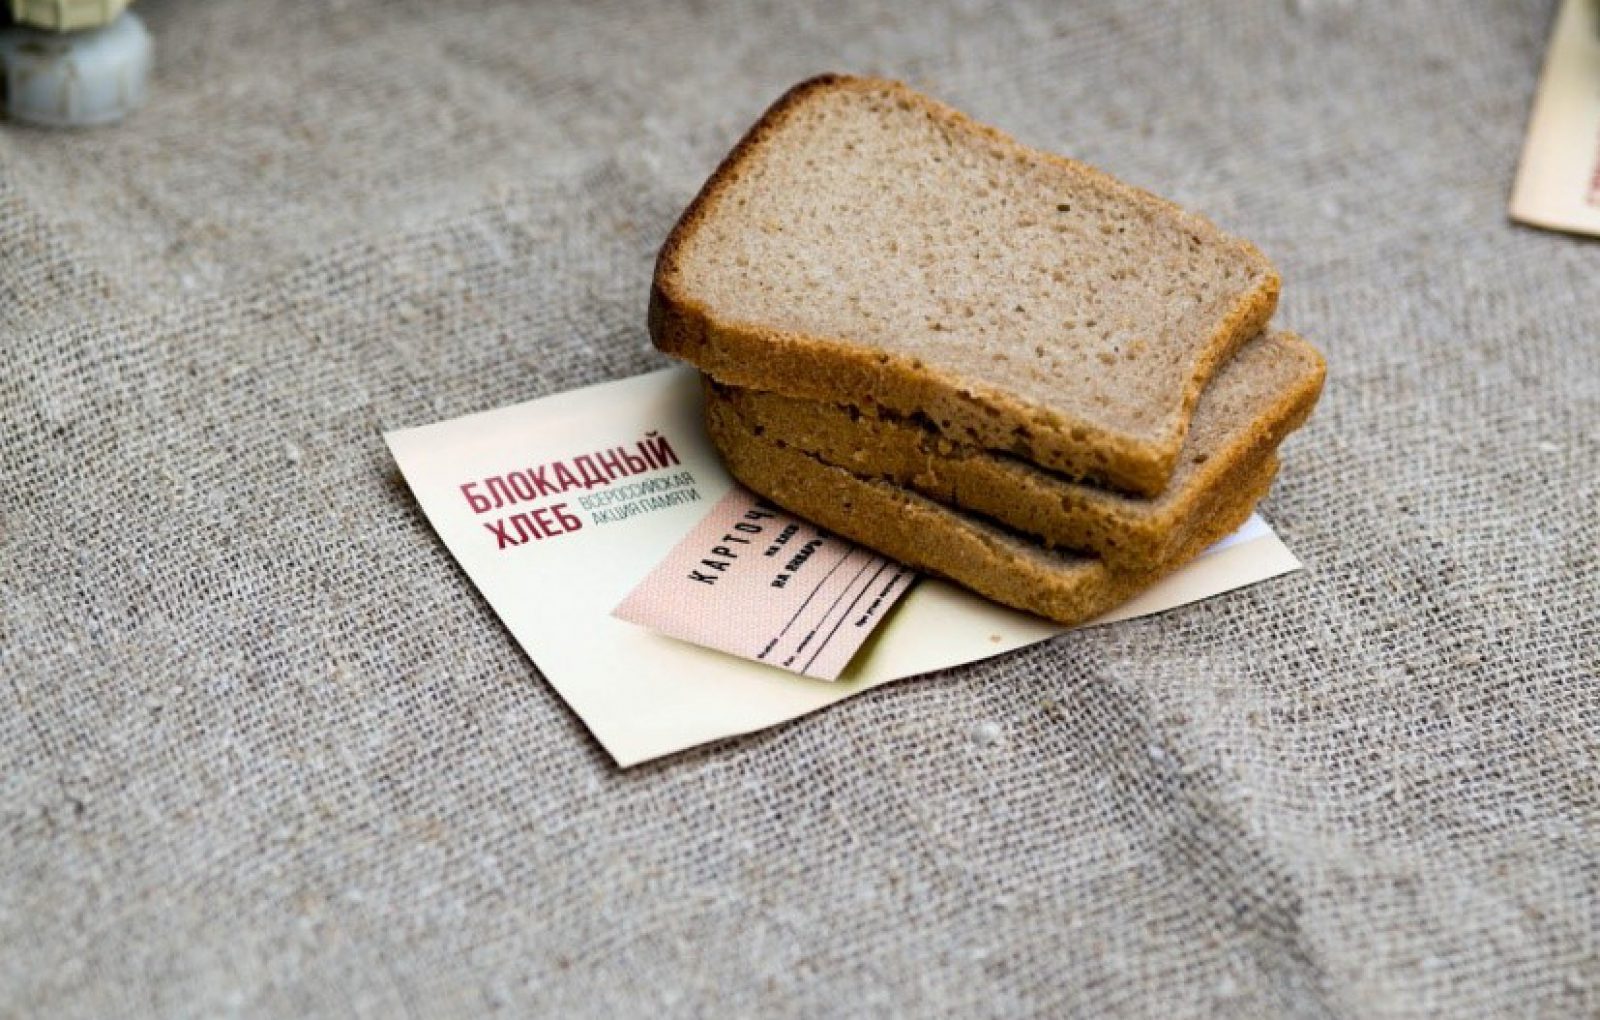 Блокадный хлеб день. Блокадный хлеб Ленинграда. Блокадный хлеб 27 января 2022. Акция блокадный хлеб. Корочка хлеба блокадного Ленинграда.